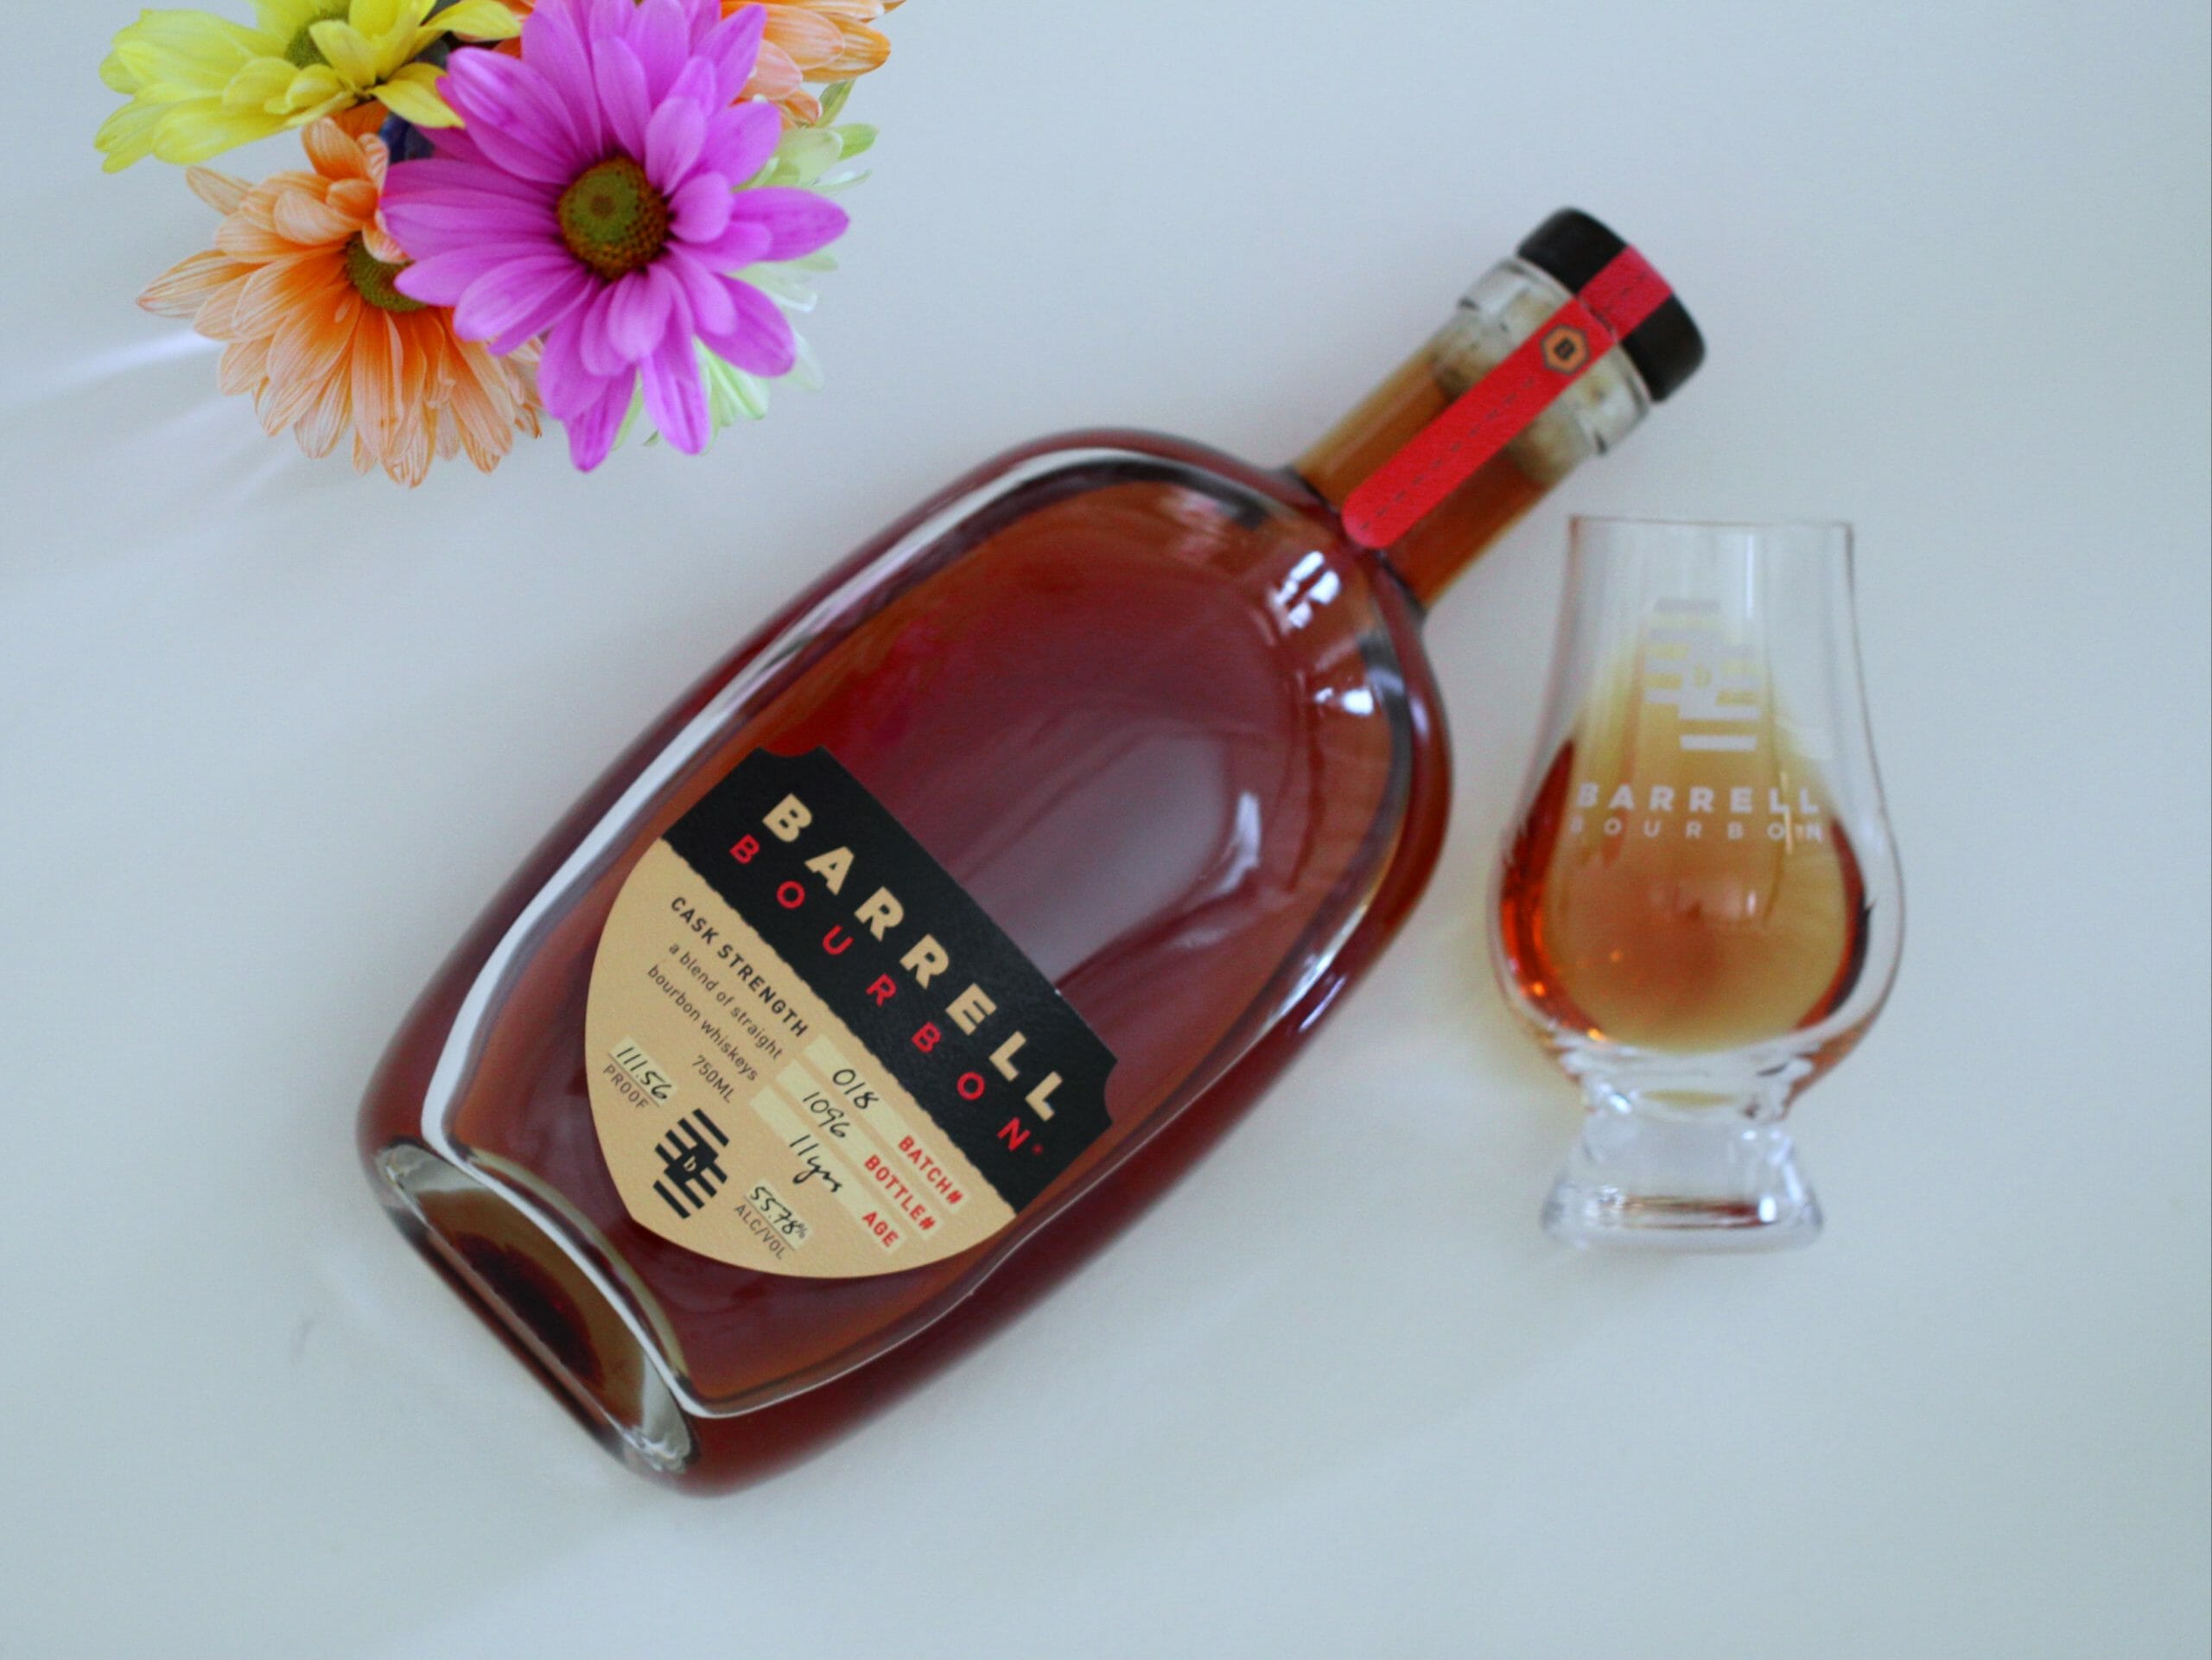 Barrell Bourbon Batch 018 Review